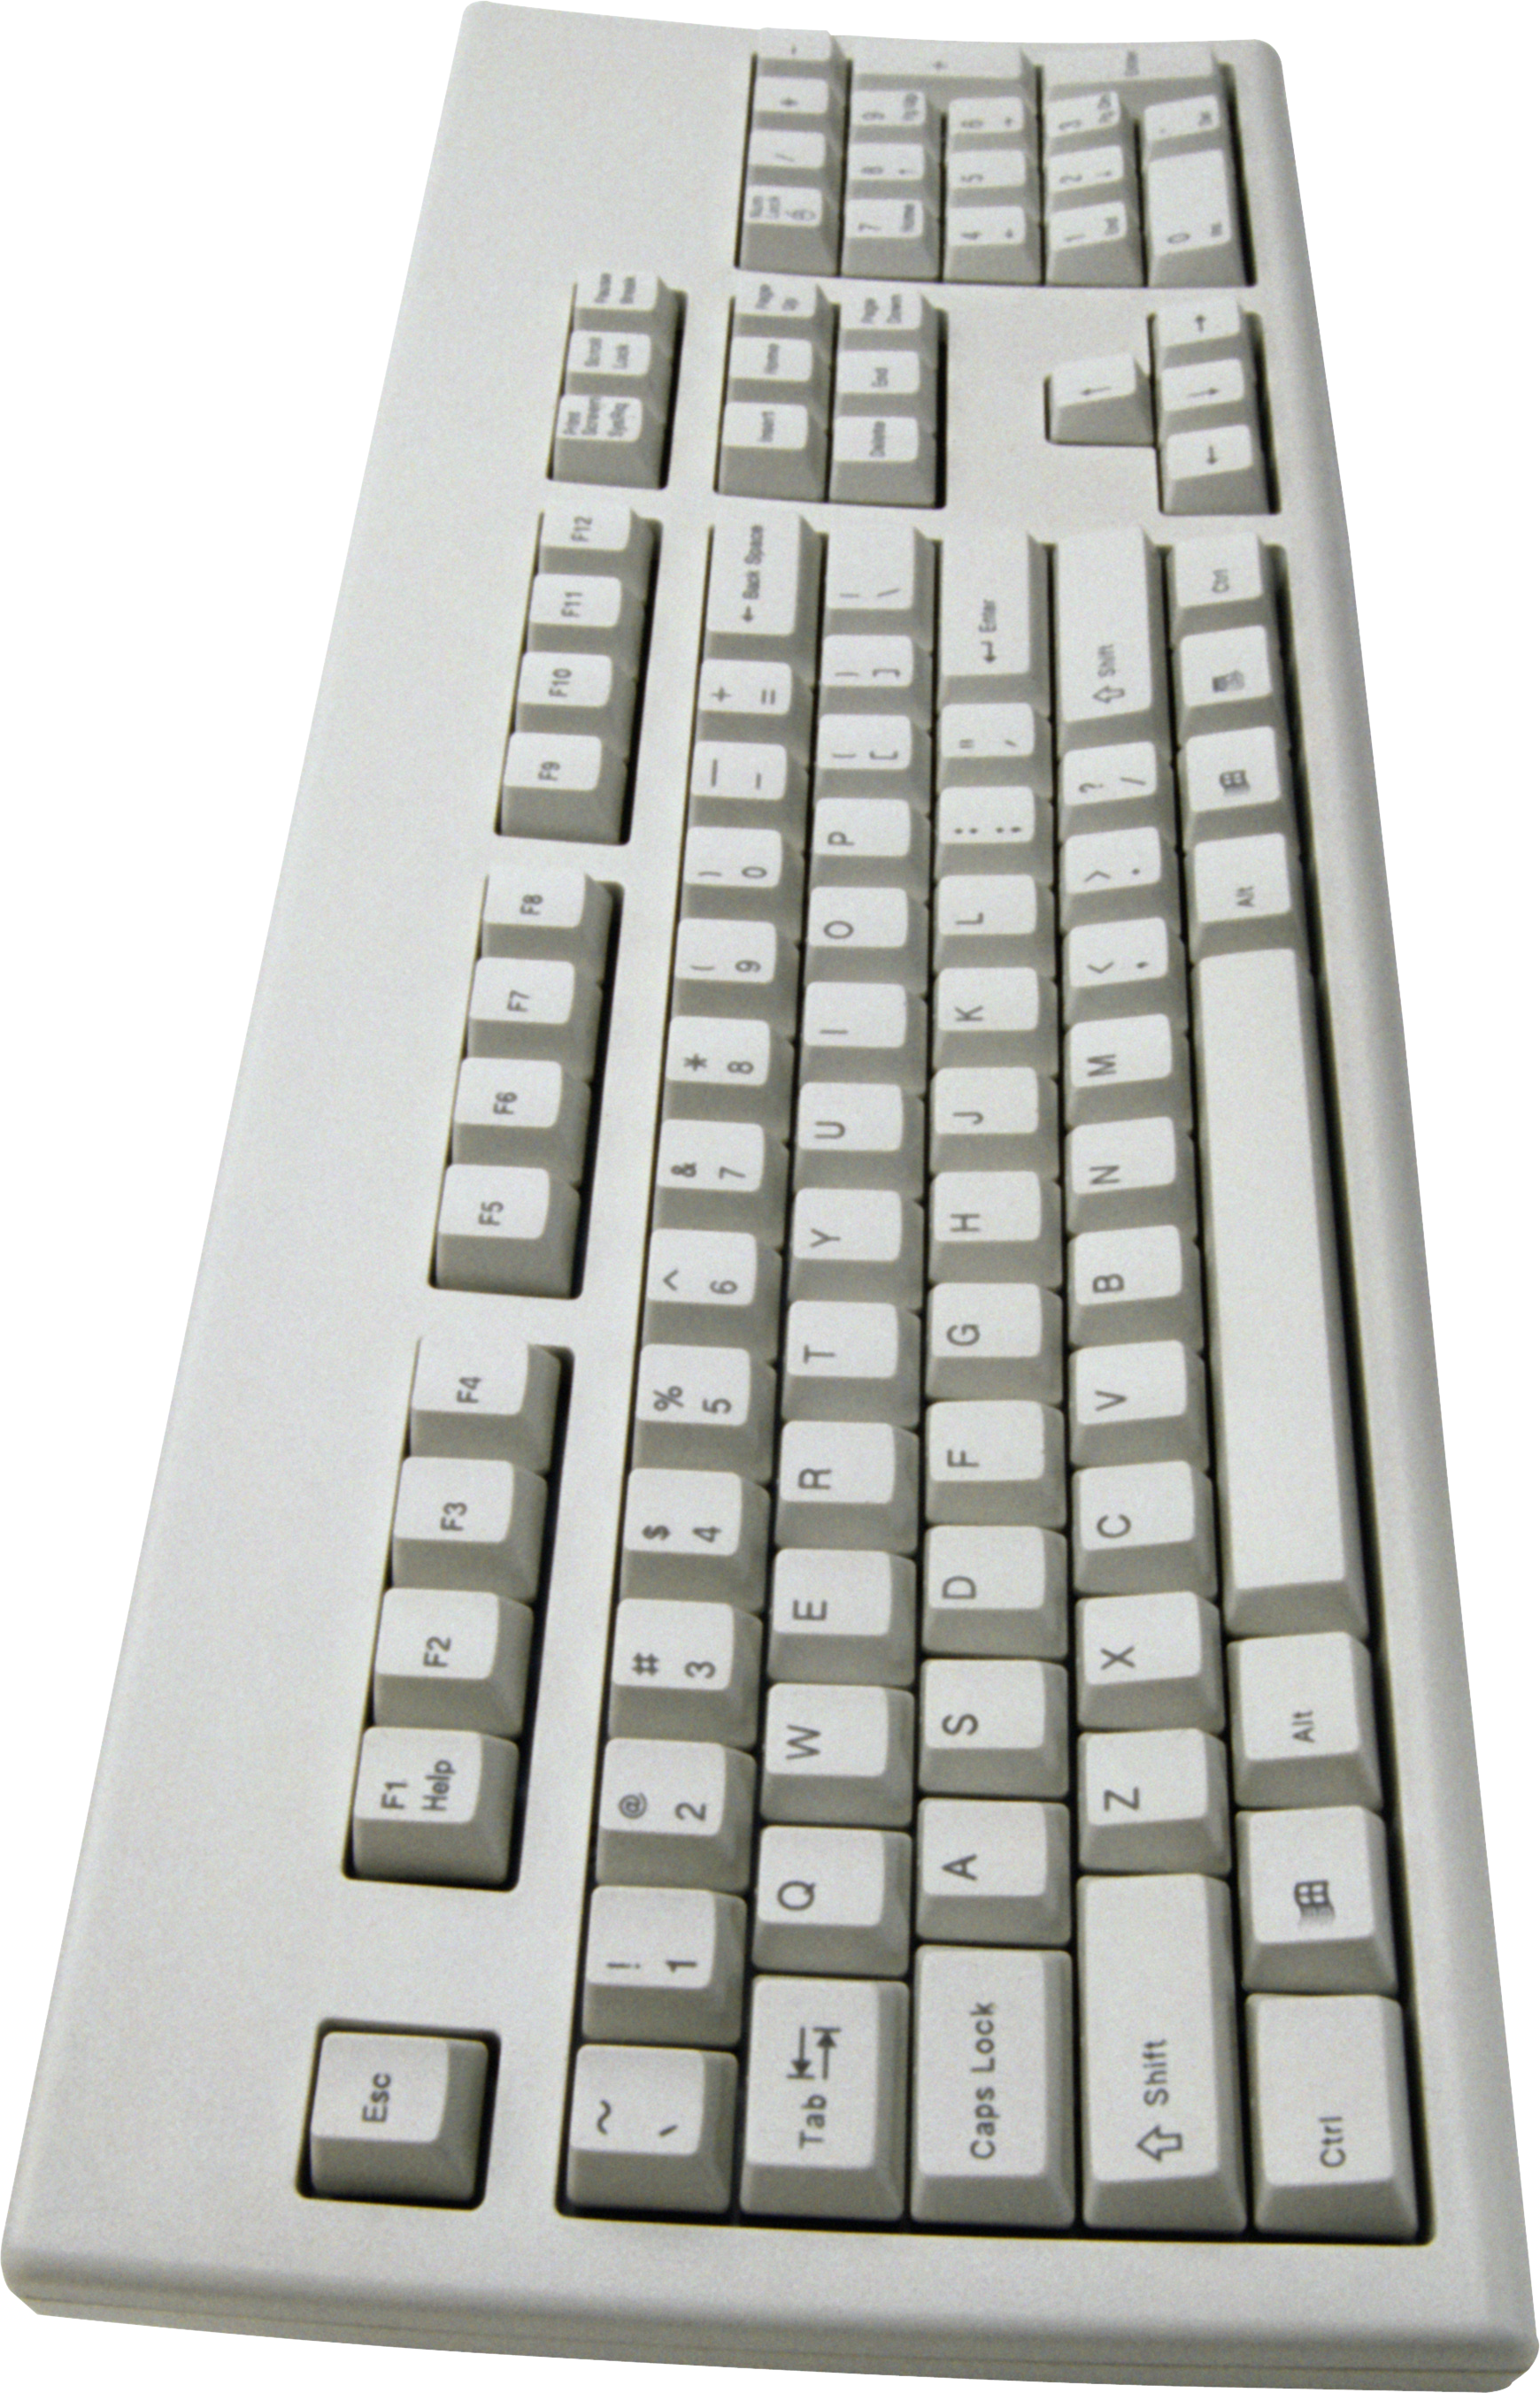 keyboard clipart 3d computer